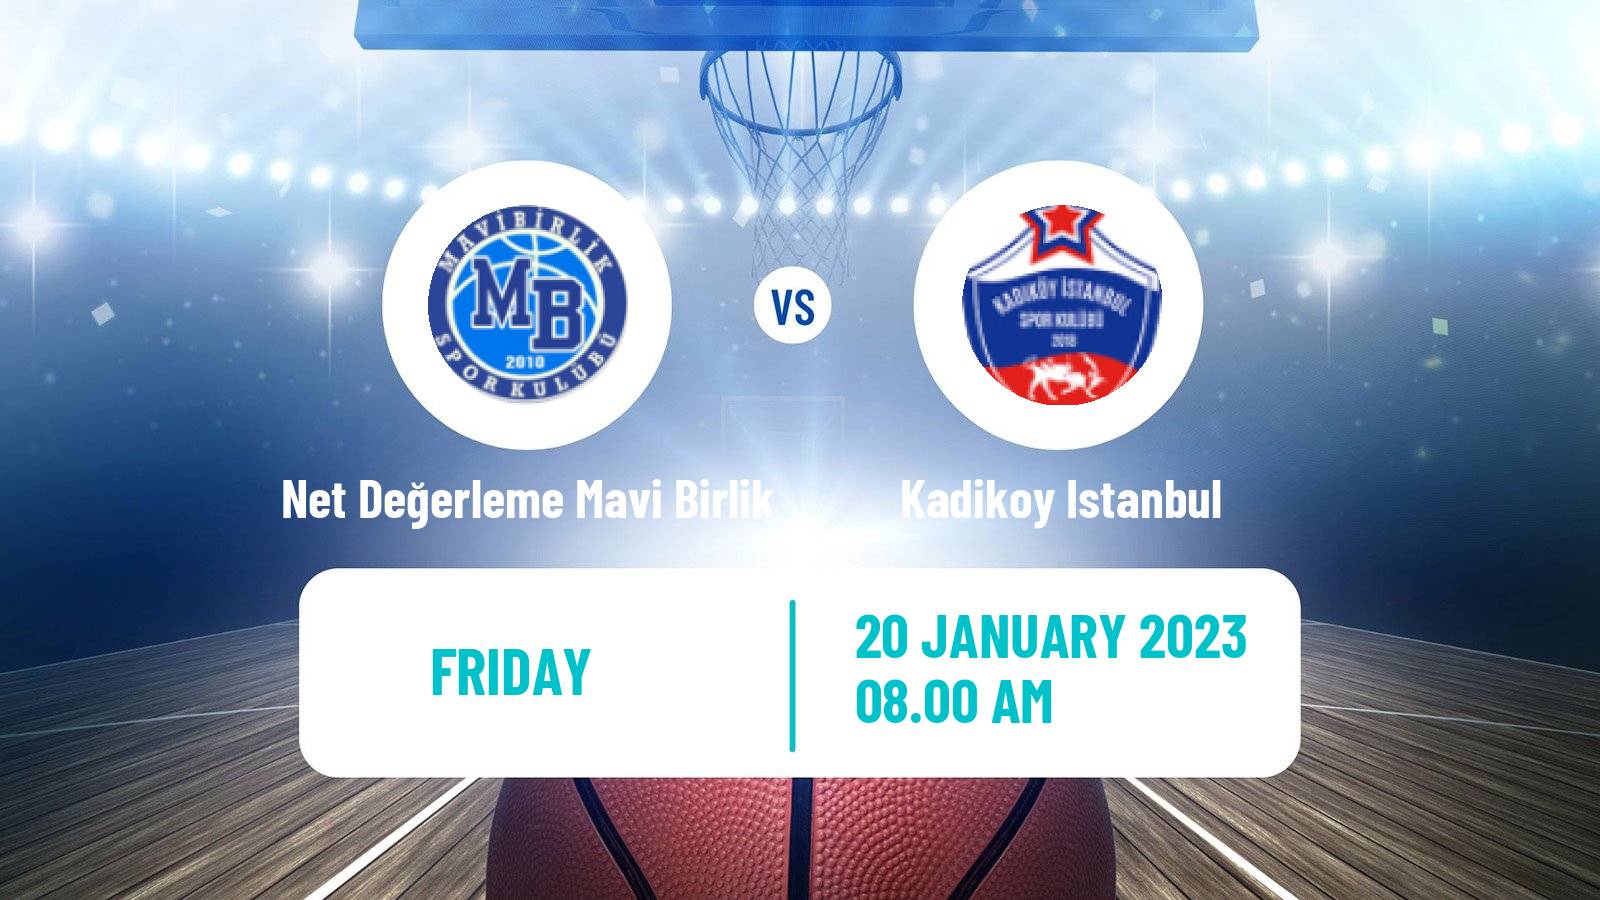 Basketball Turkish TB2L Net Değerleme Mavi Birlik - Kadikoy Istanbul